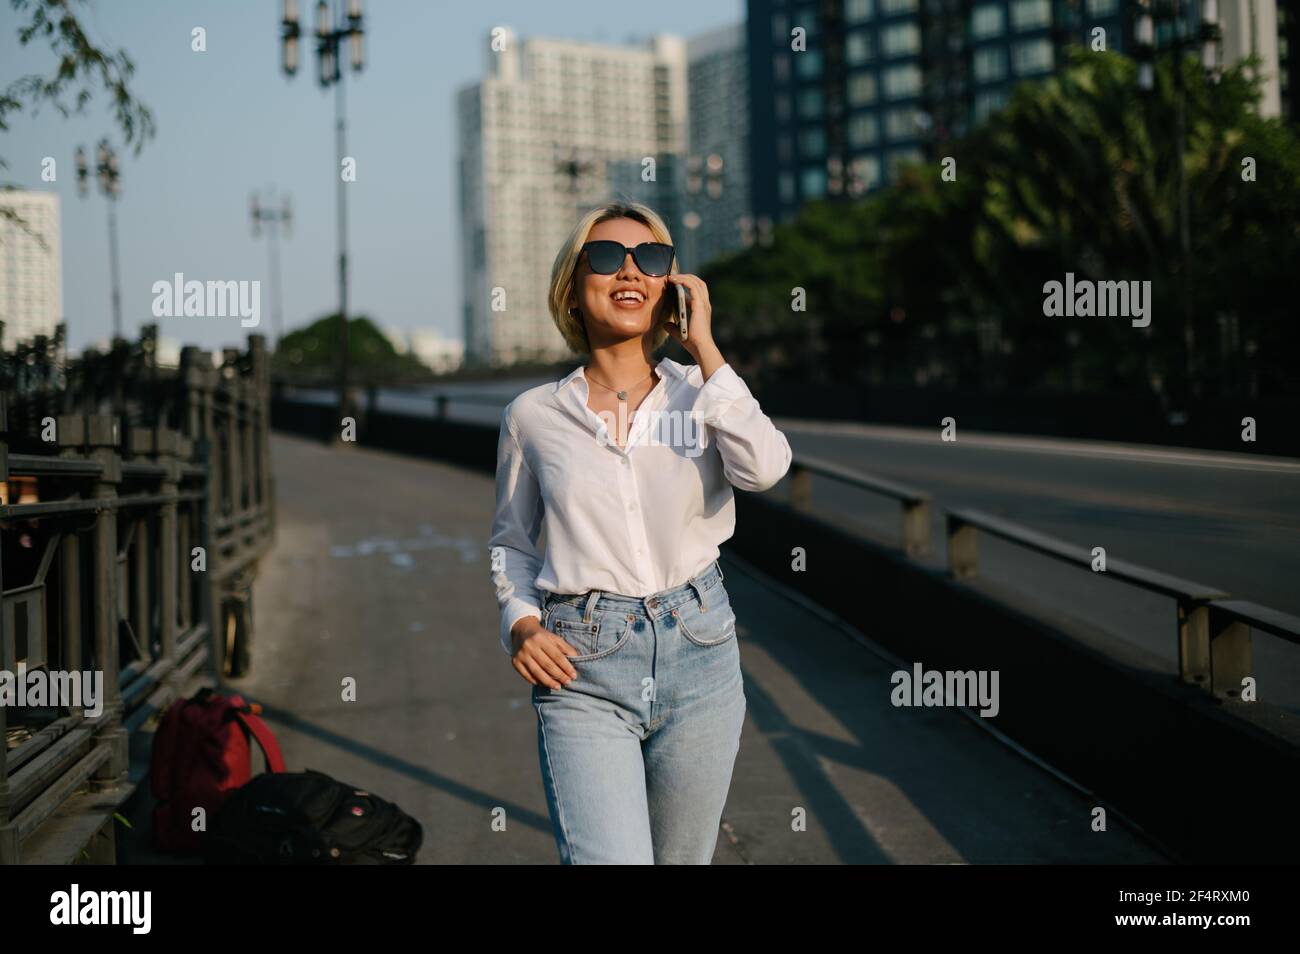 Une jeune femme asiatique avec des lunettes de soleil marchant dans la rue souriant joyeusement en parlant sur son téléphone. Une sensation de bien-être. Banque D'Images